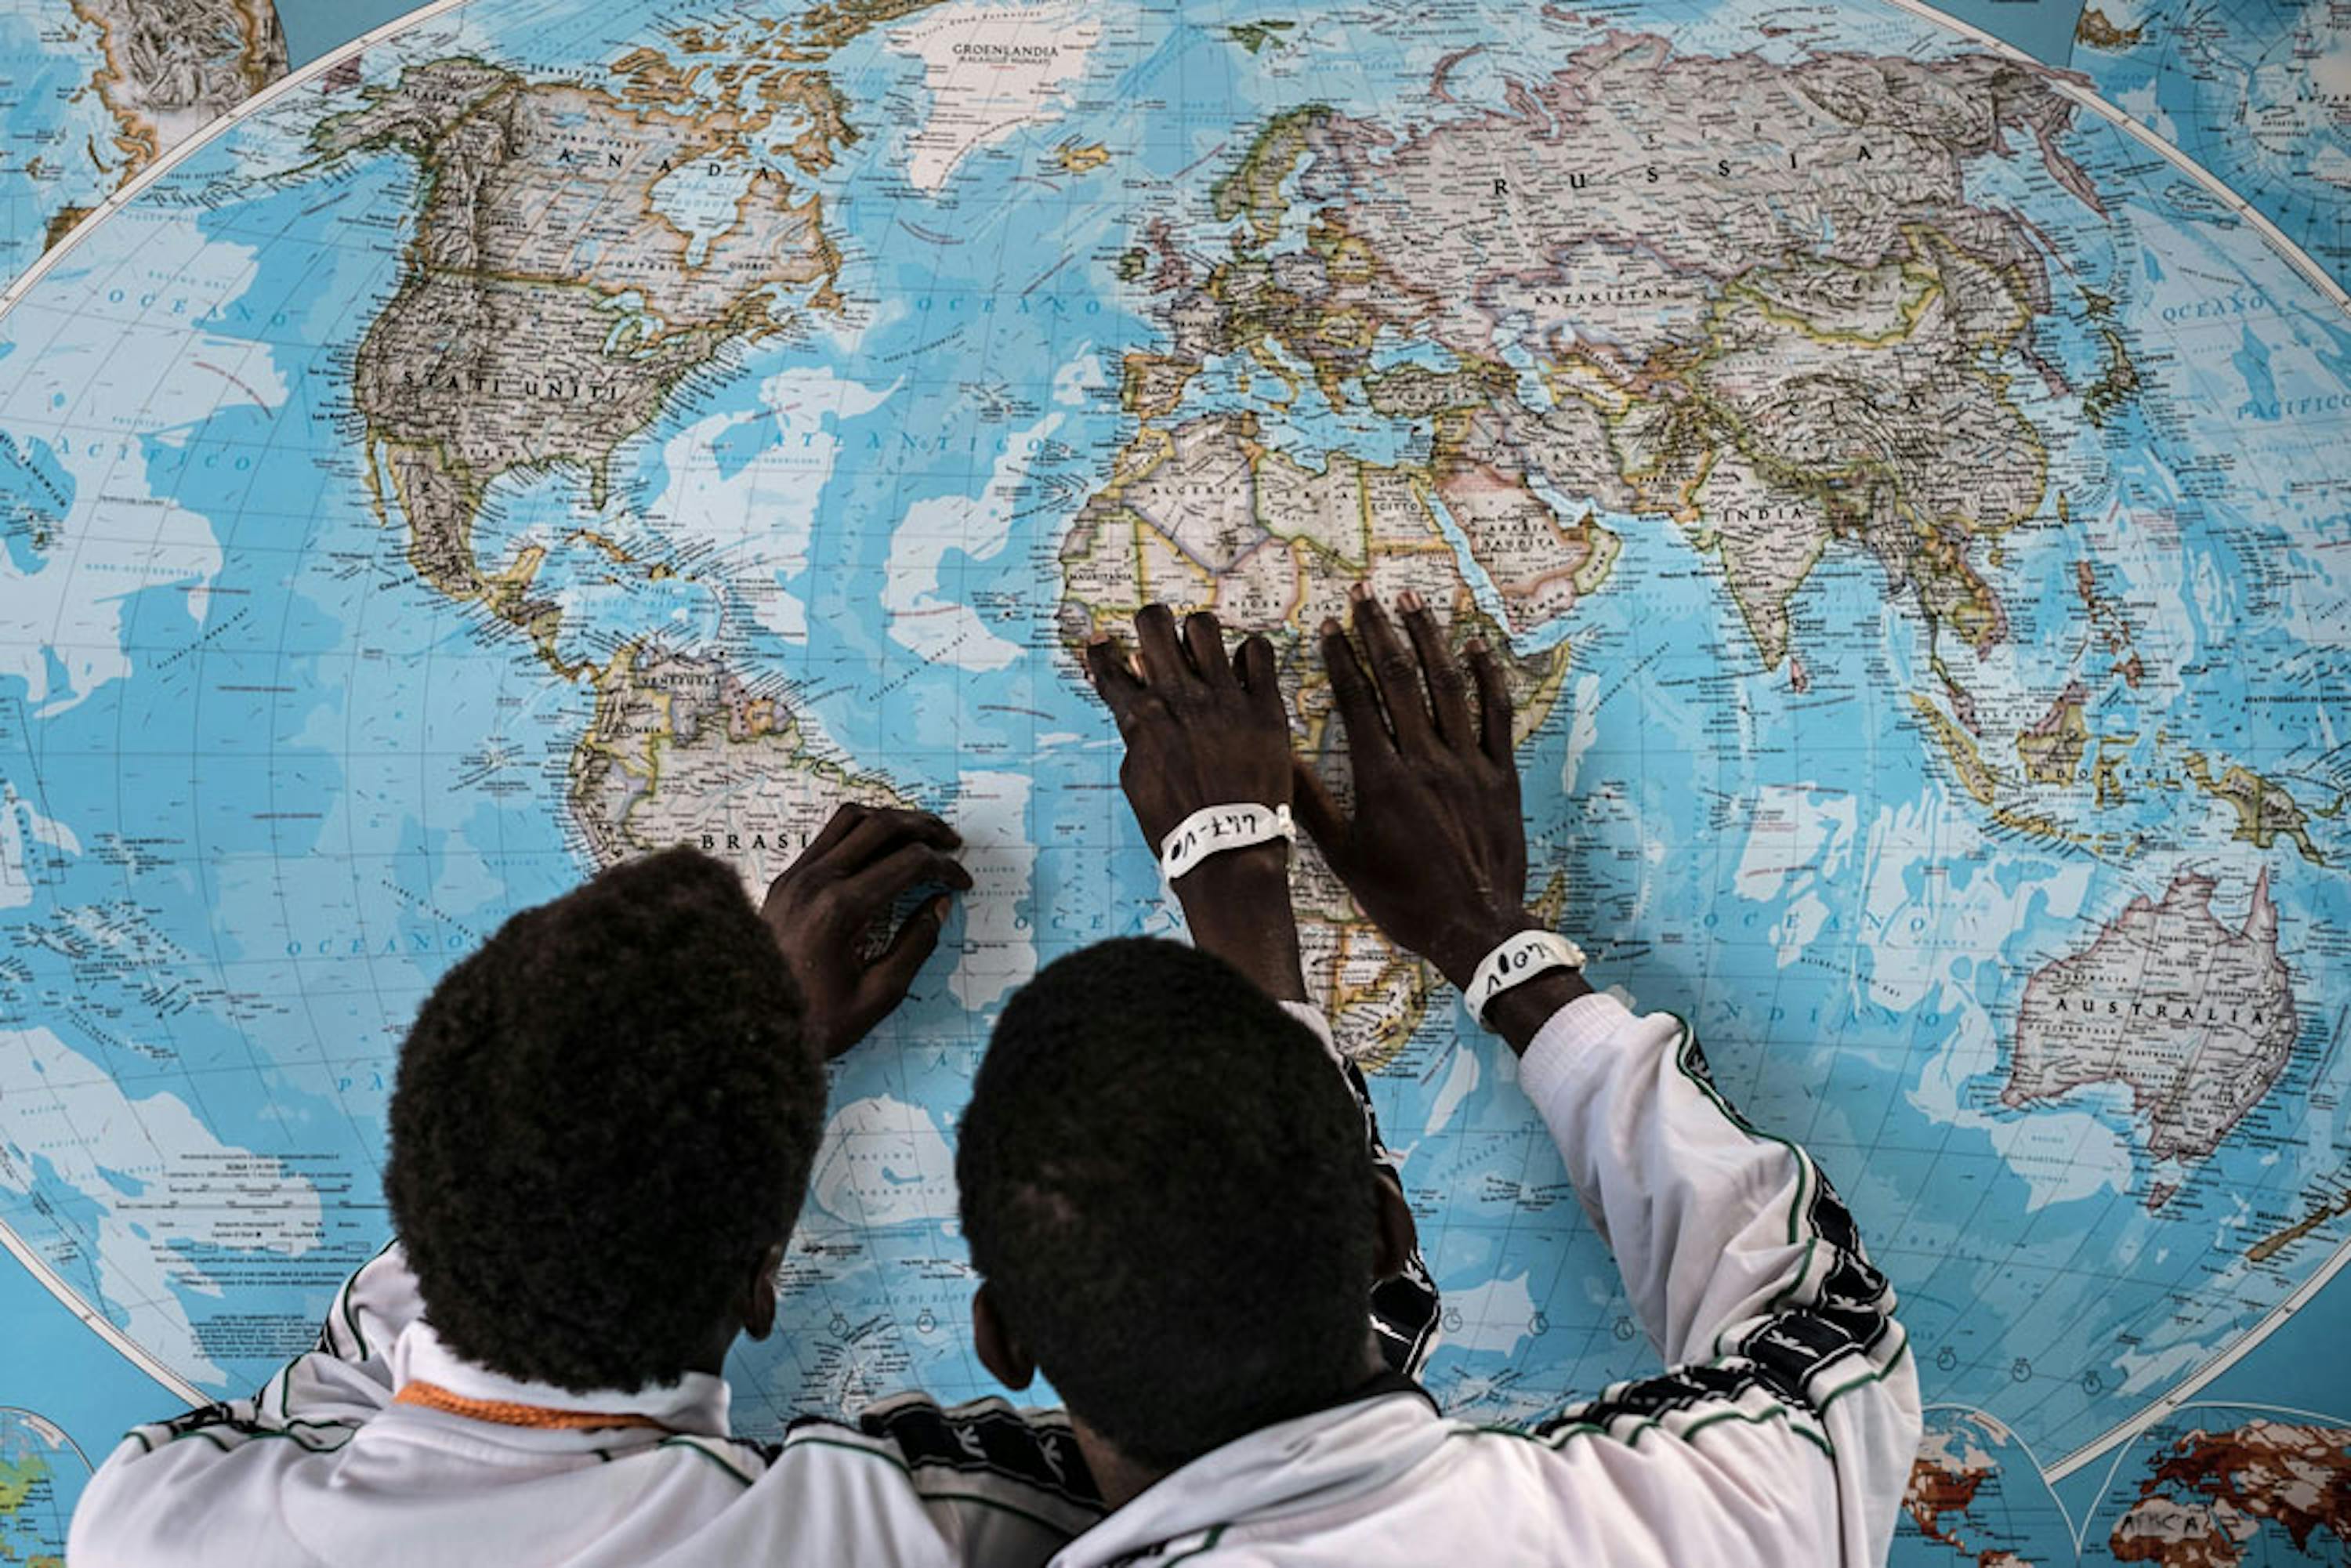 Adolescenti del Gambia in un centro di accoglienza a Pozzallo (Siracusa) - ©UNICEF/UN020011/Gilbertson VII Photo